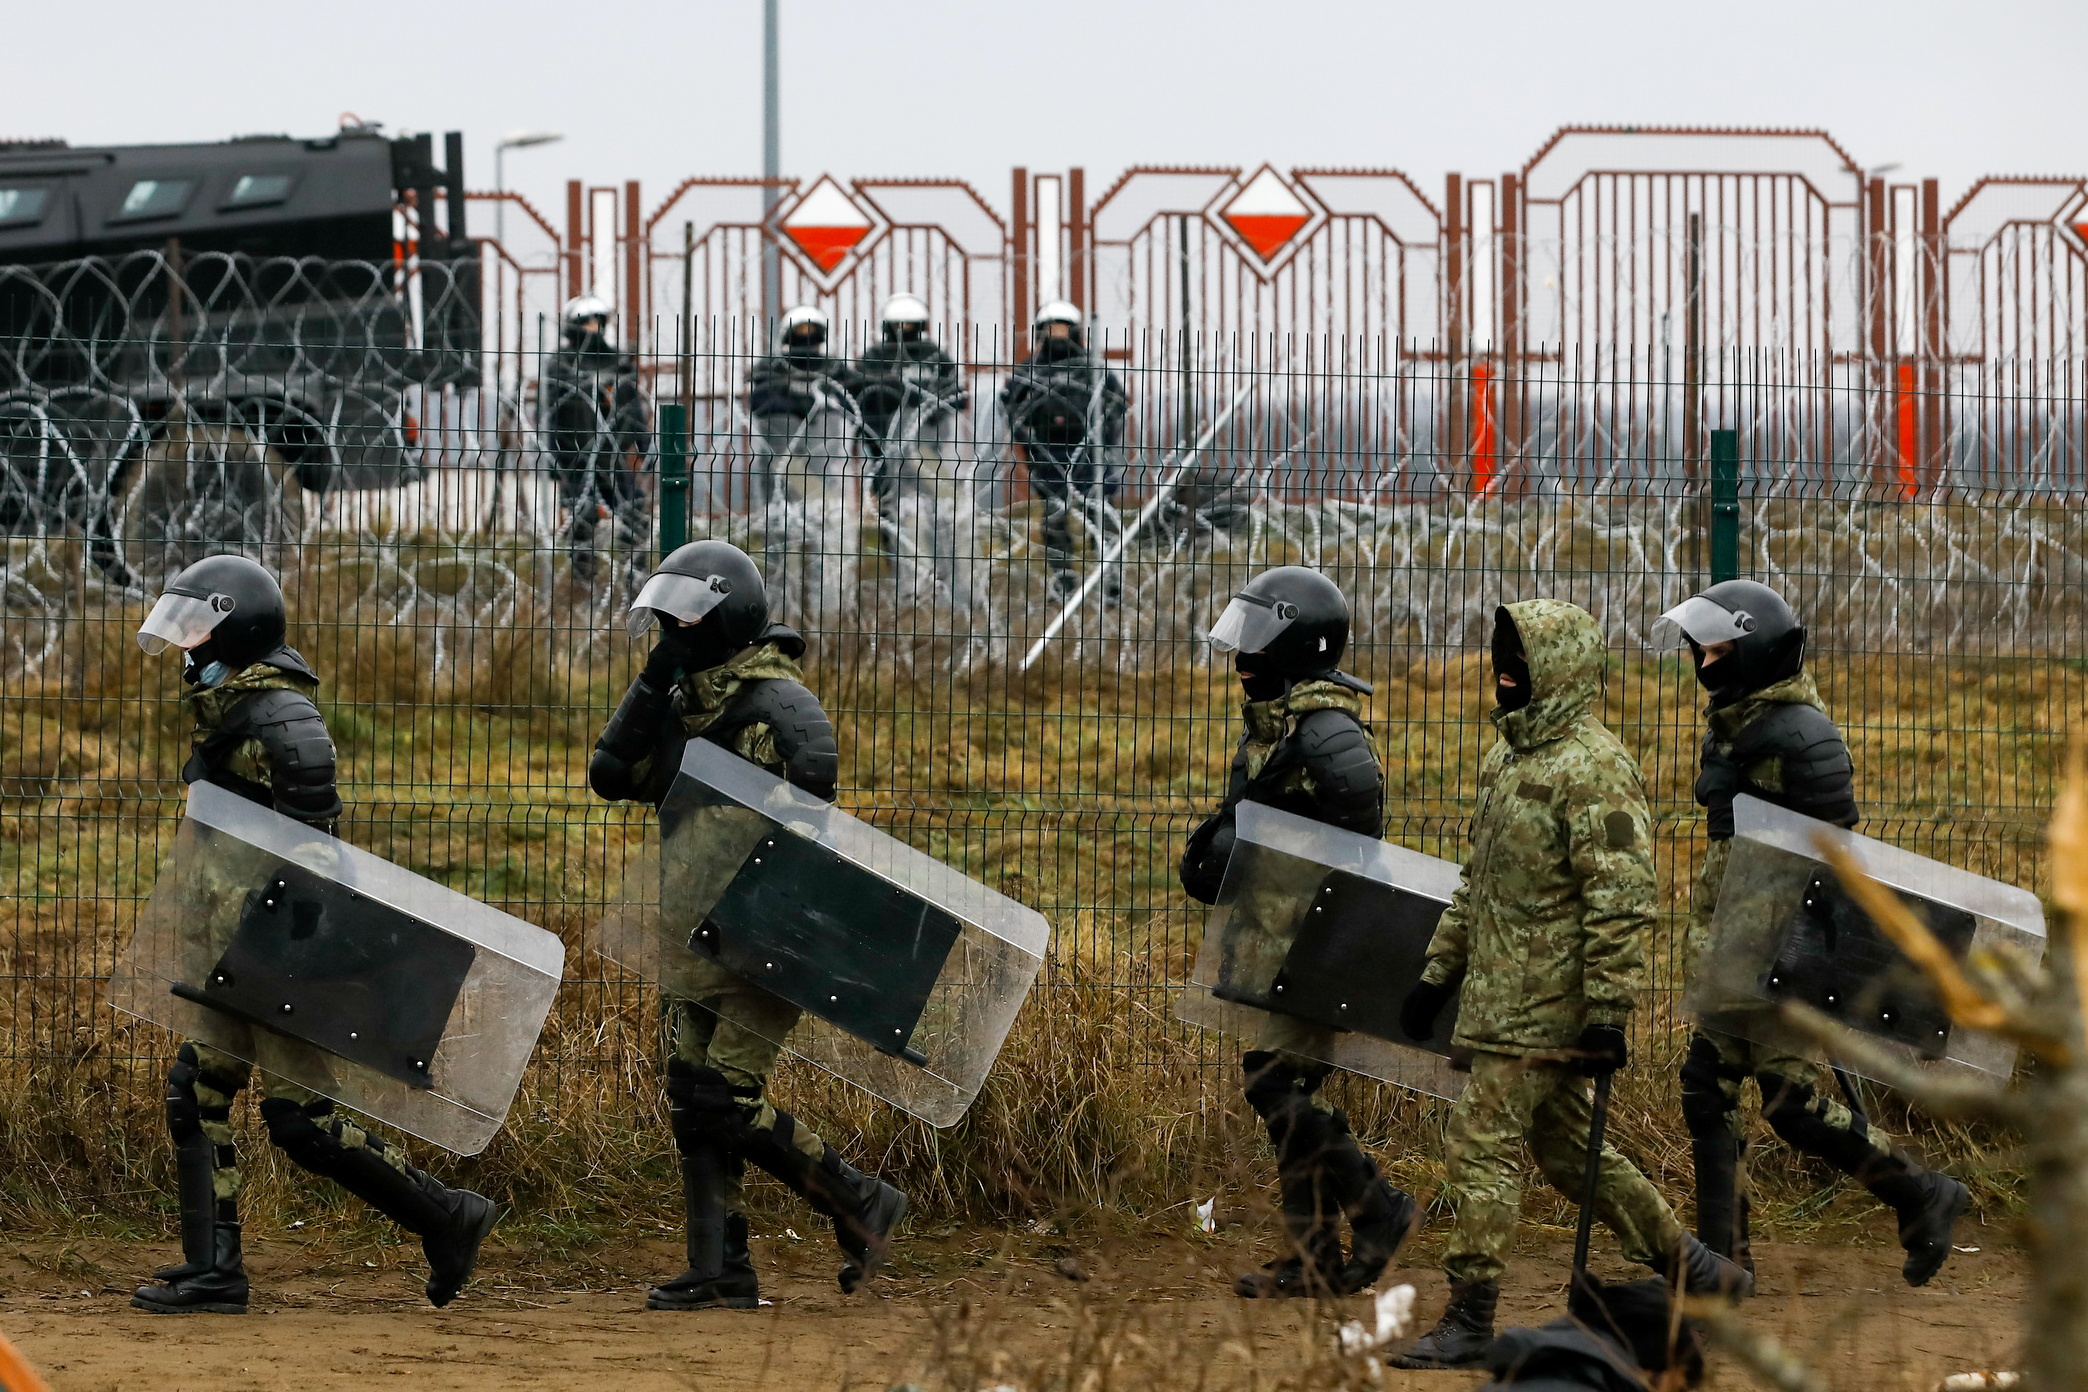 Persoal policial bielorruso camiña nun campamento preto do posto de control de Bruzgi-Kuznica na fronteira bielorrusa-polaca na rexión de Grodno, Bielorrusia, o 18 de novembro de 2021. REUTERS/Kacper Pempel